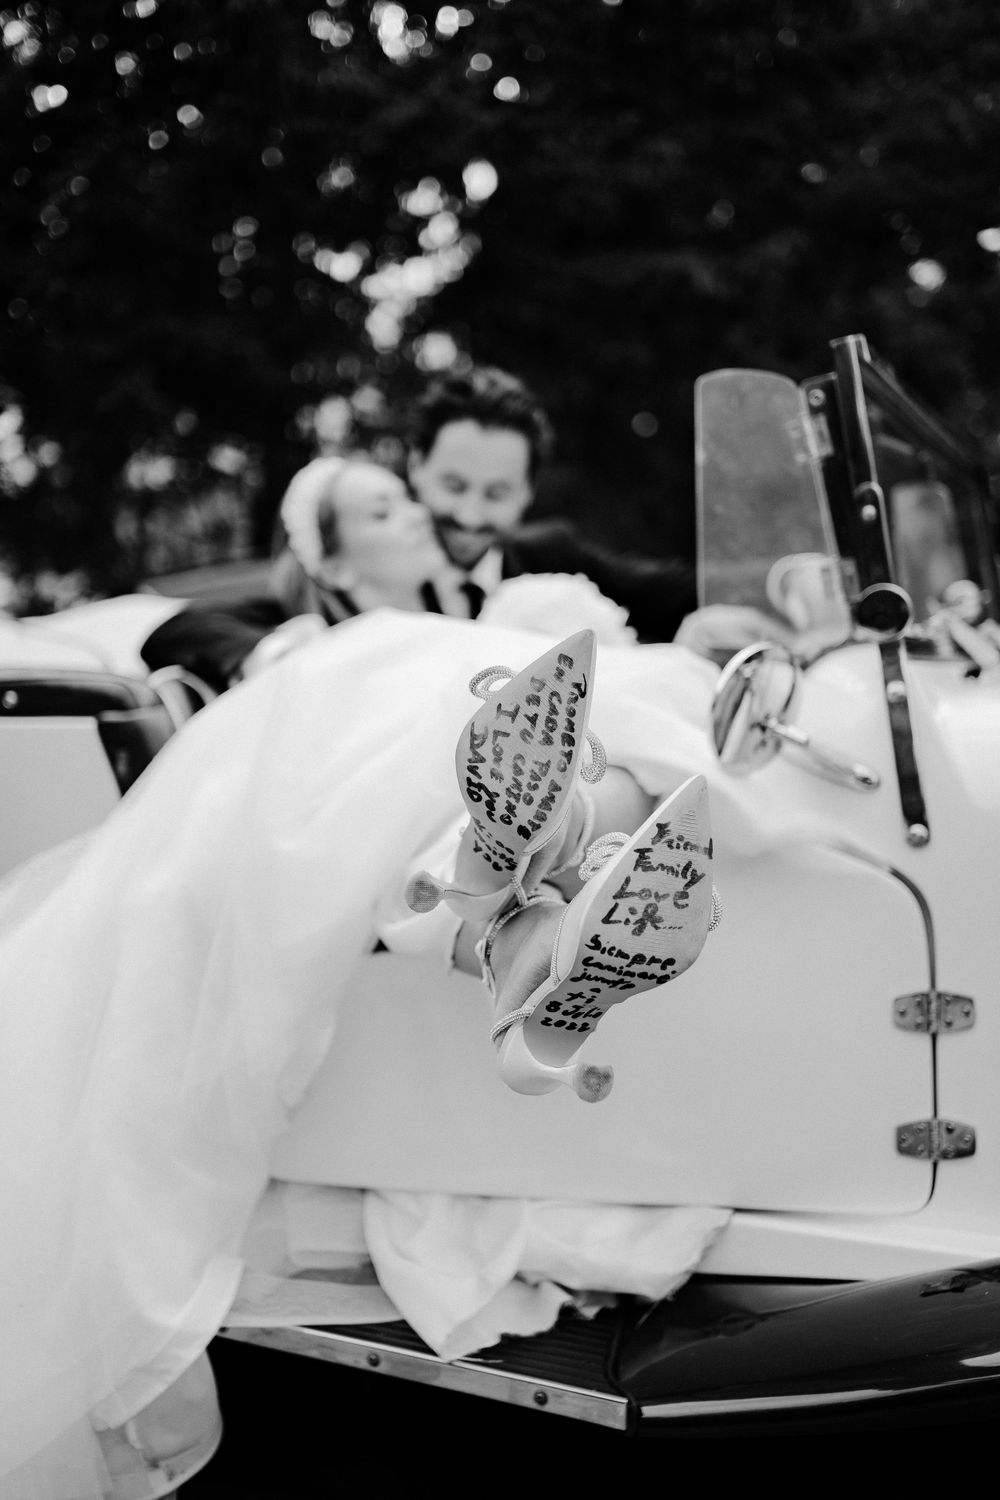 Roberto Shumski Destination Wedding Photography Videography